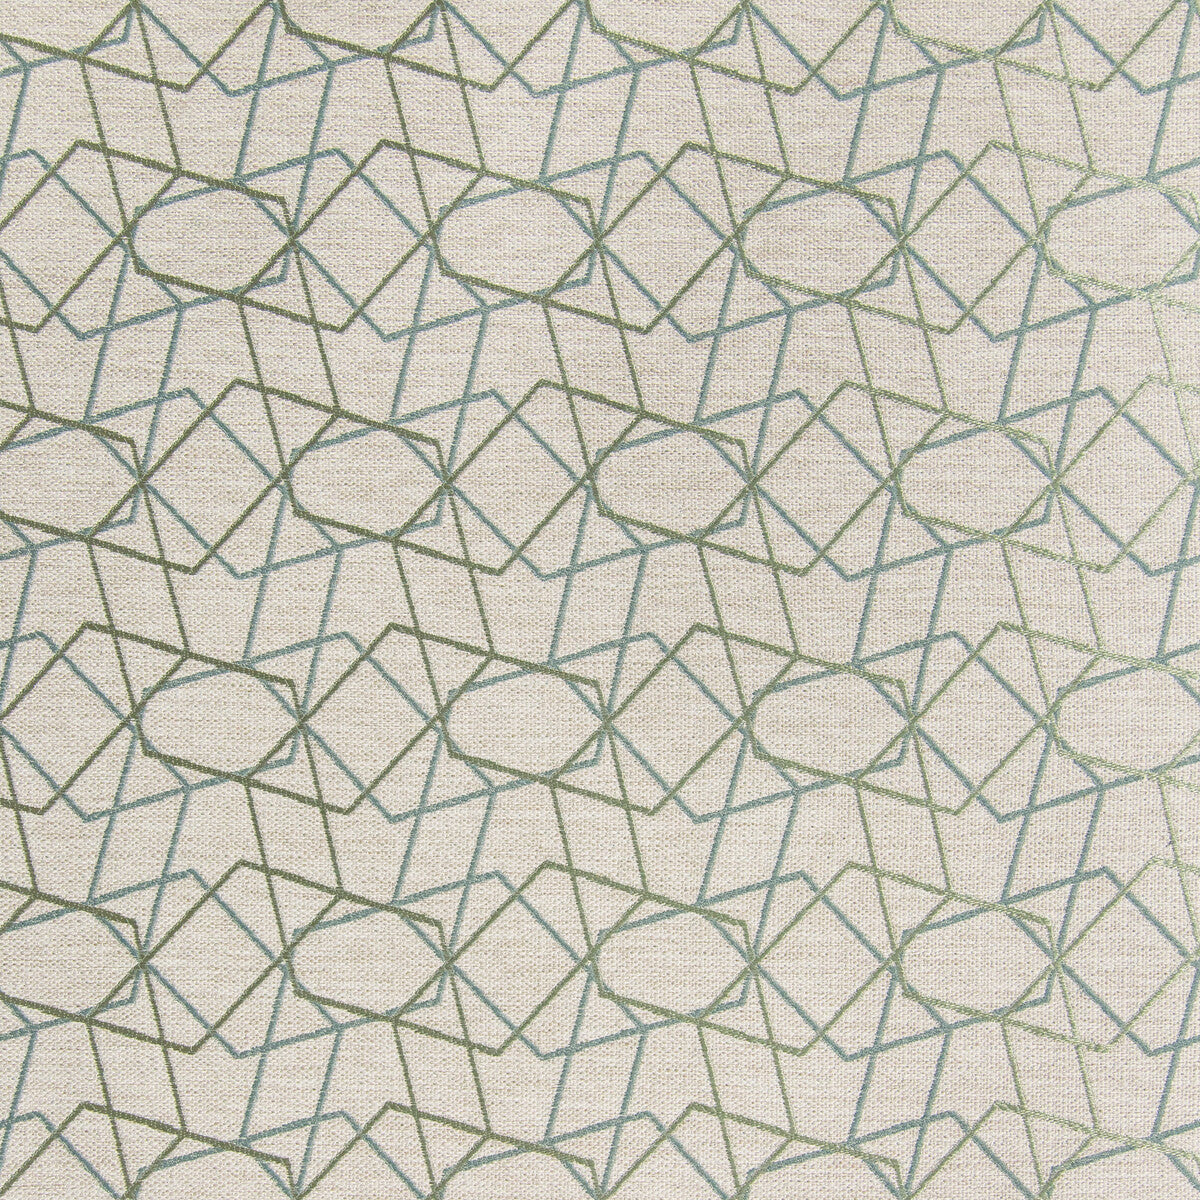 Kravet Design fabric in 35600-113 color - pattern 35600.113.0 - by Kravet Design